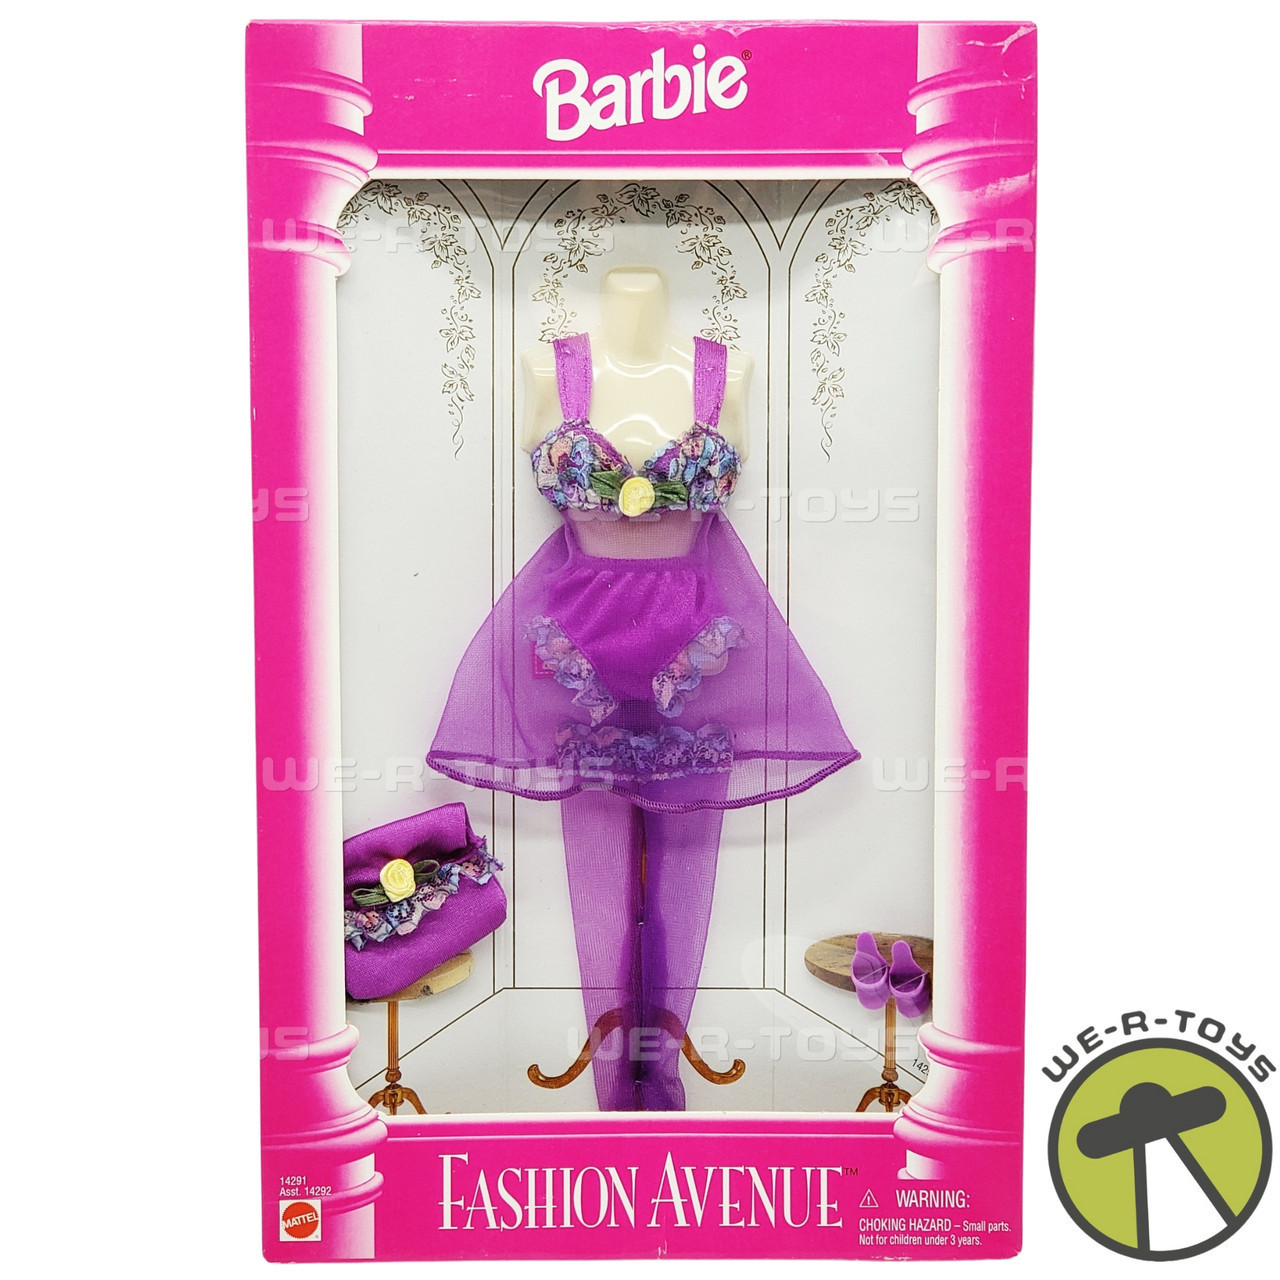 Barbie fashion avenue lingerie collection - Vintage & Antique Toys